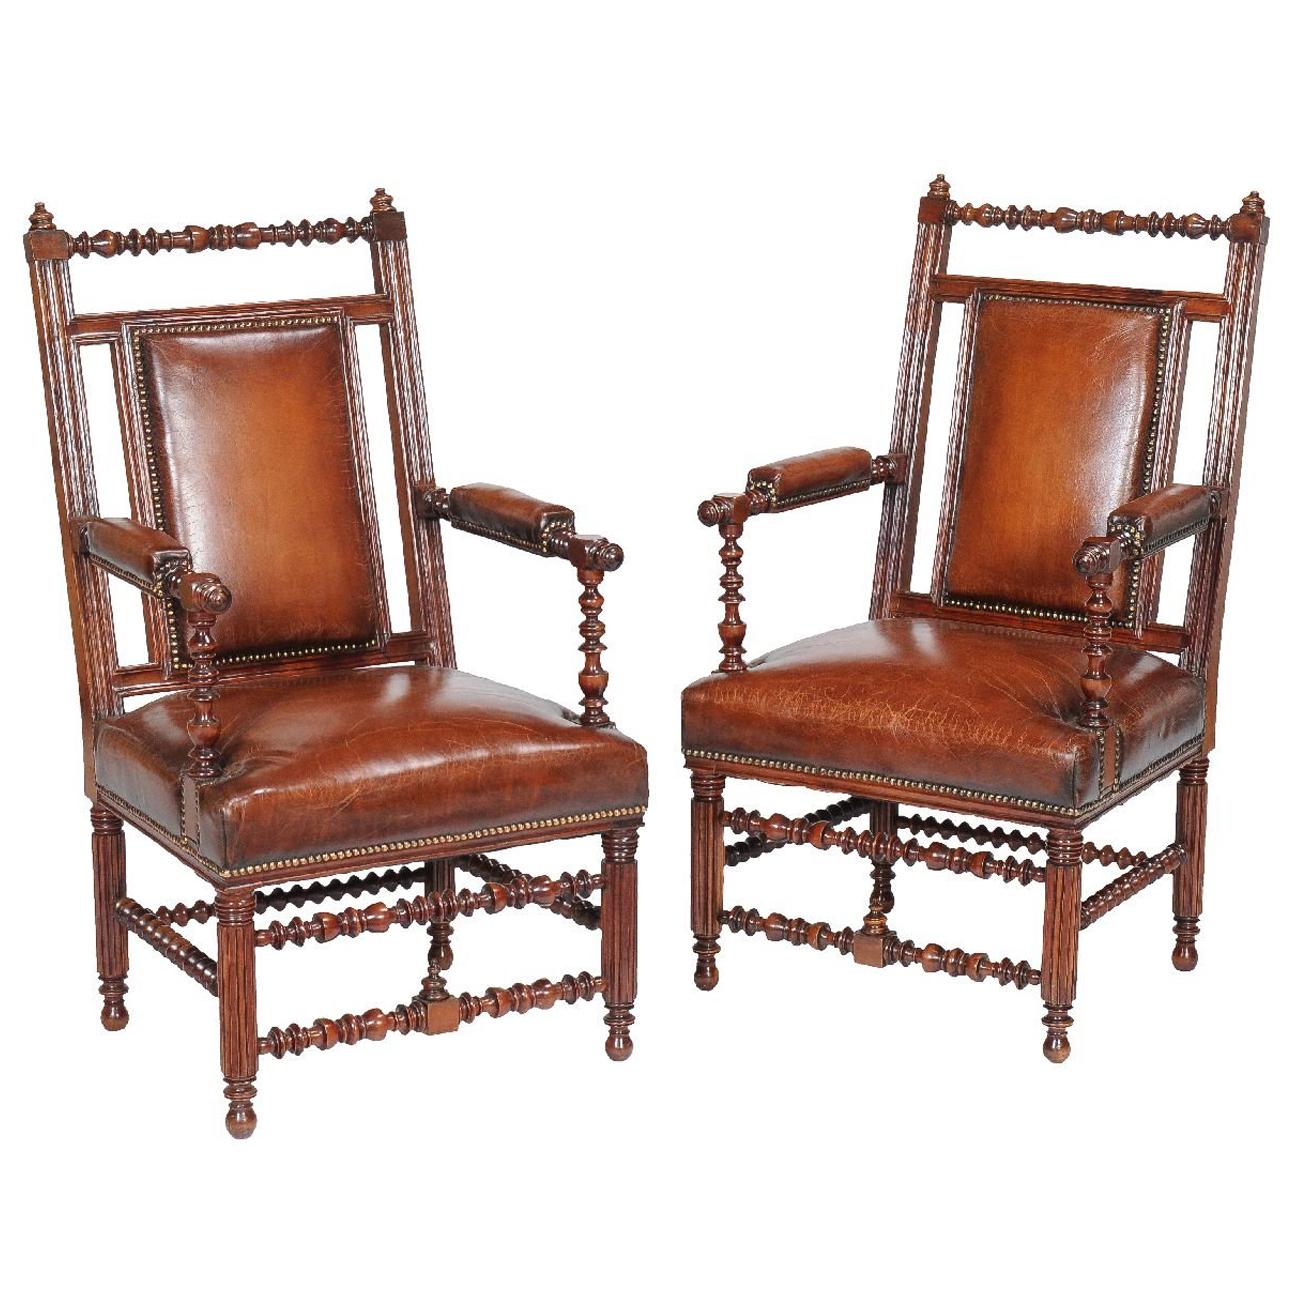 Paire de fauteuils en noyer de style victorien Revive gothique anglais du 19e siècle